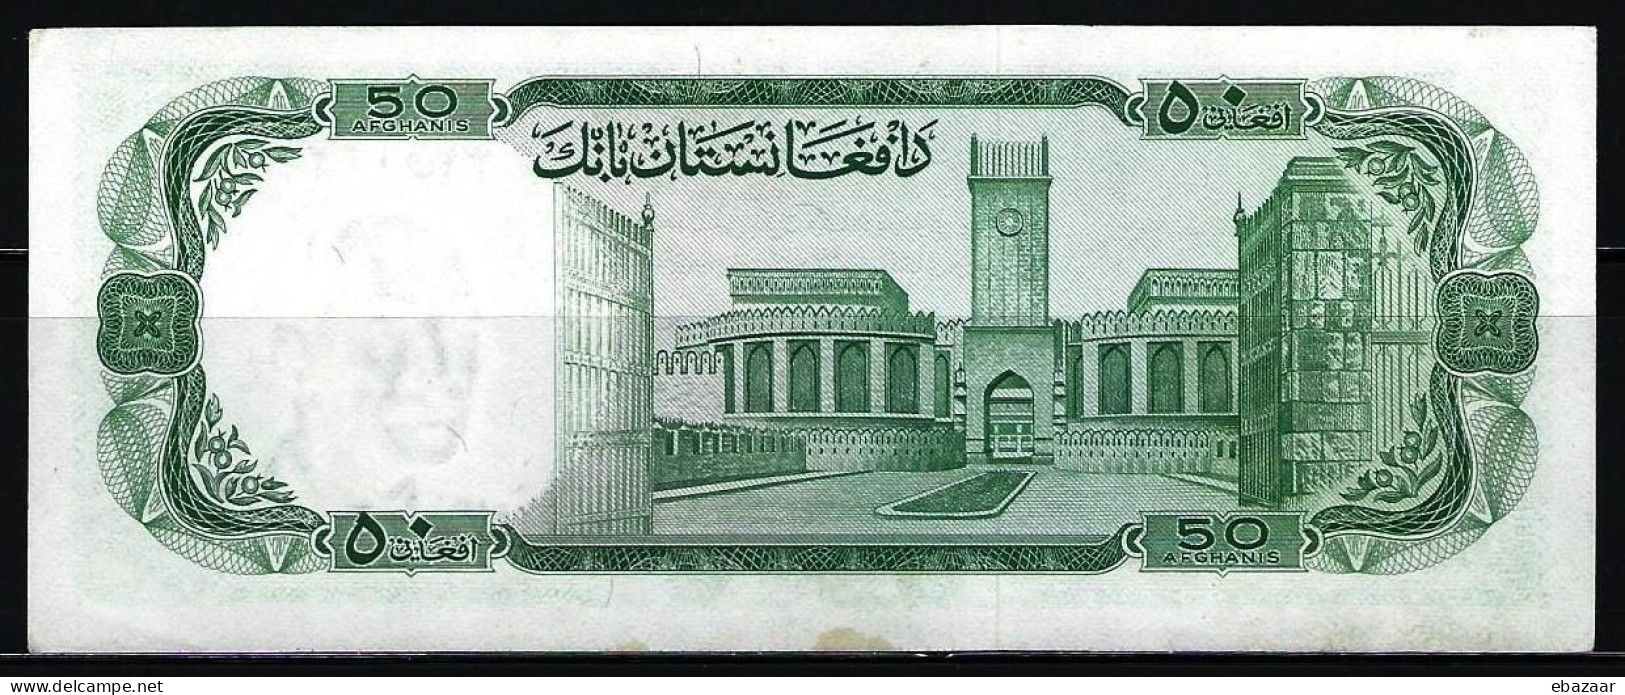 Afghanistan (Da Afghanistan Bank) 1967 Banknotes 50 Afghanis P-43 - Afghanistan